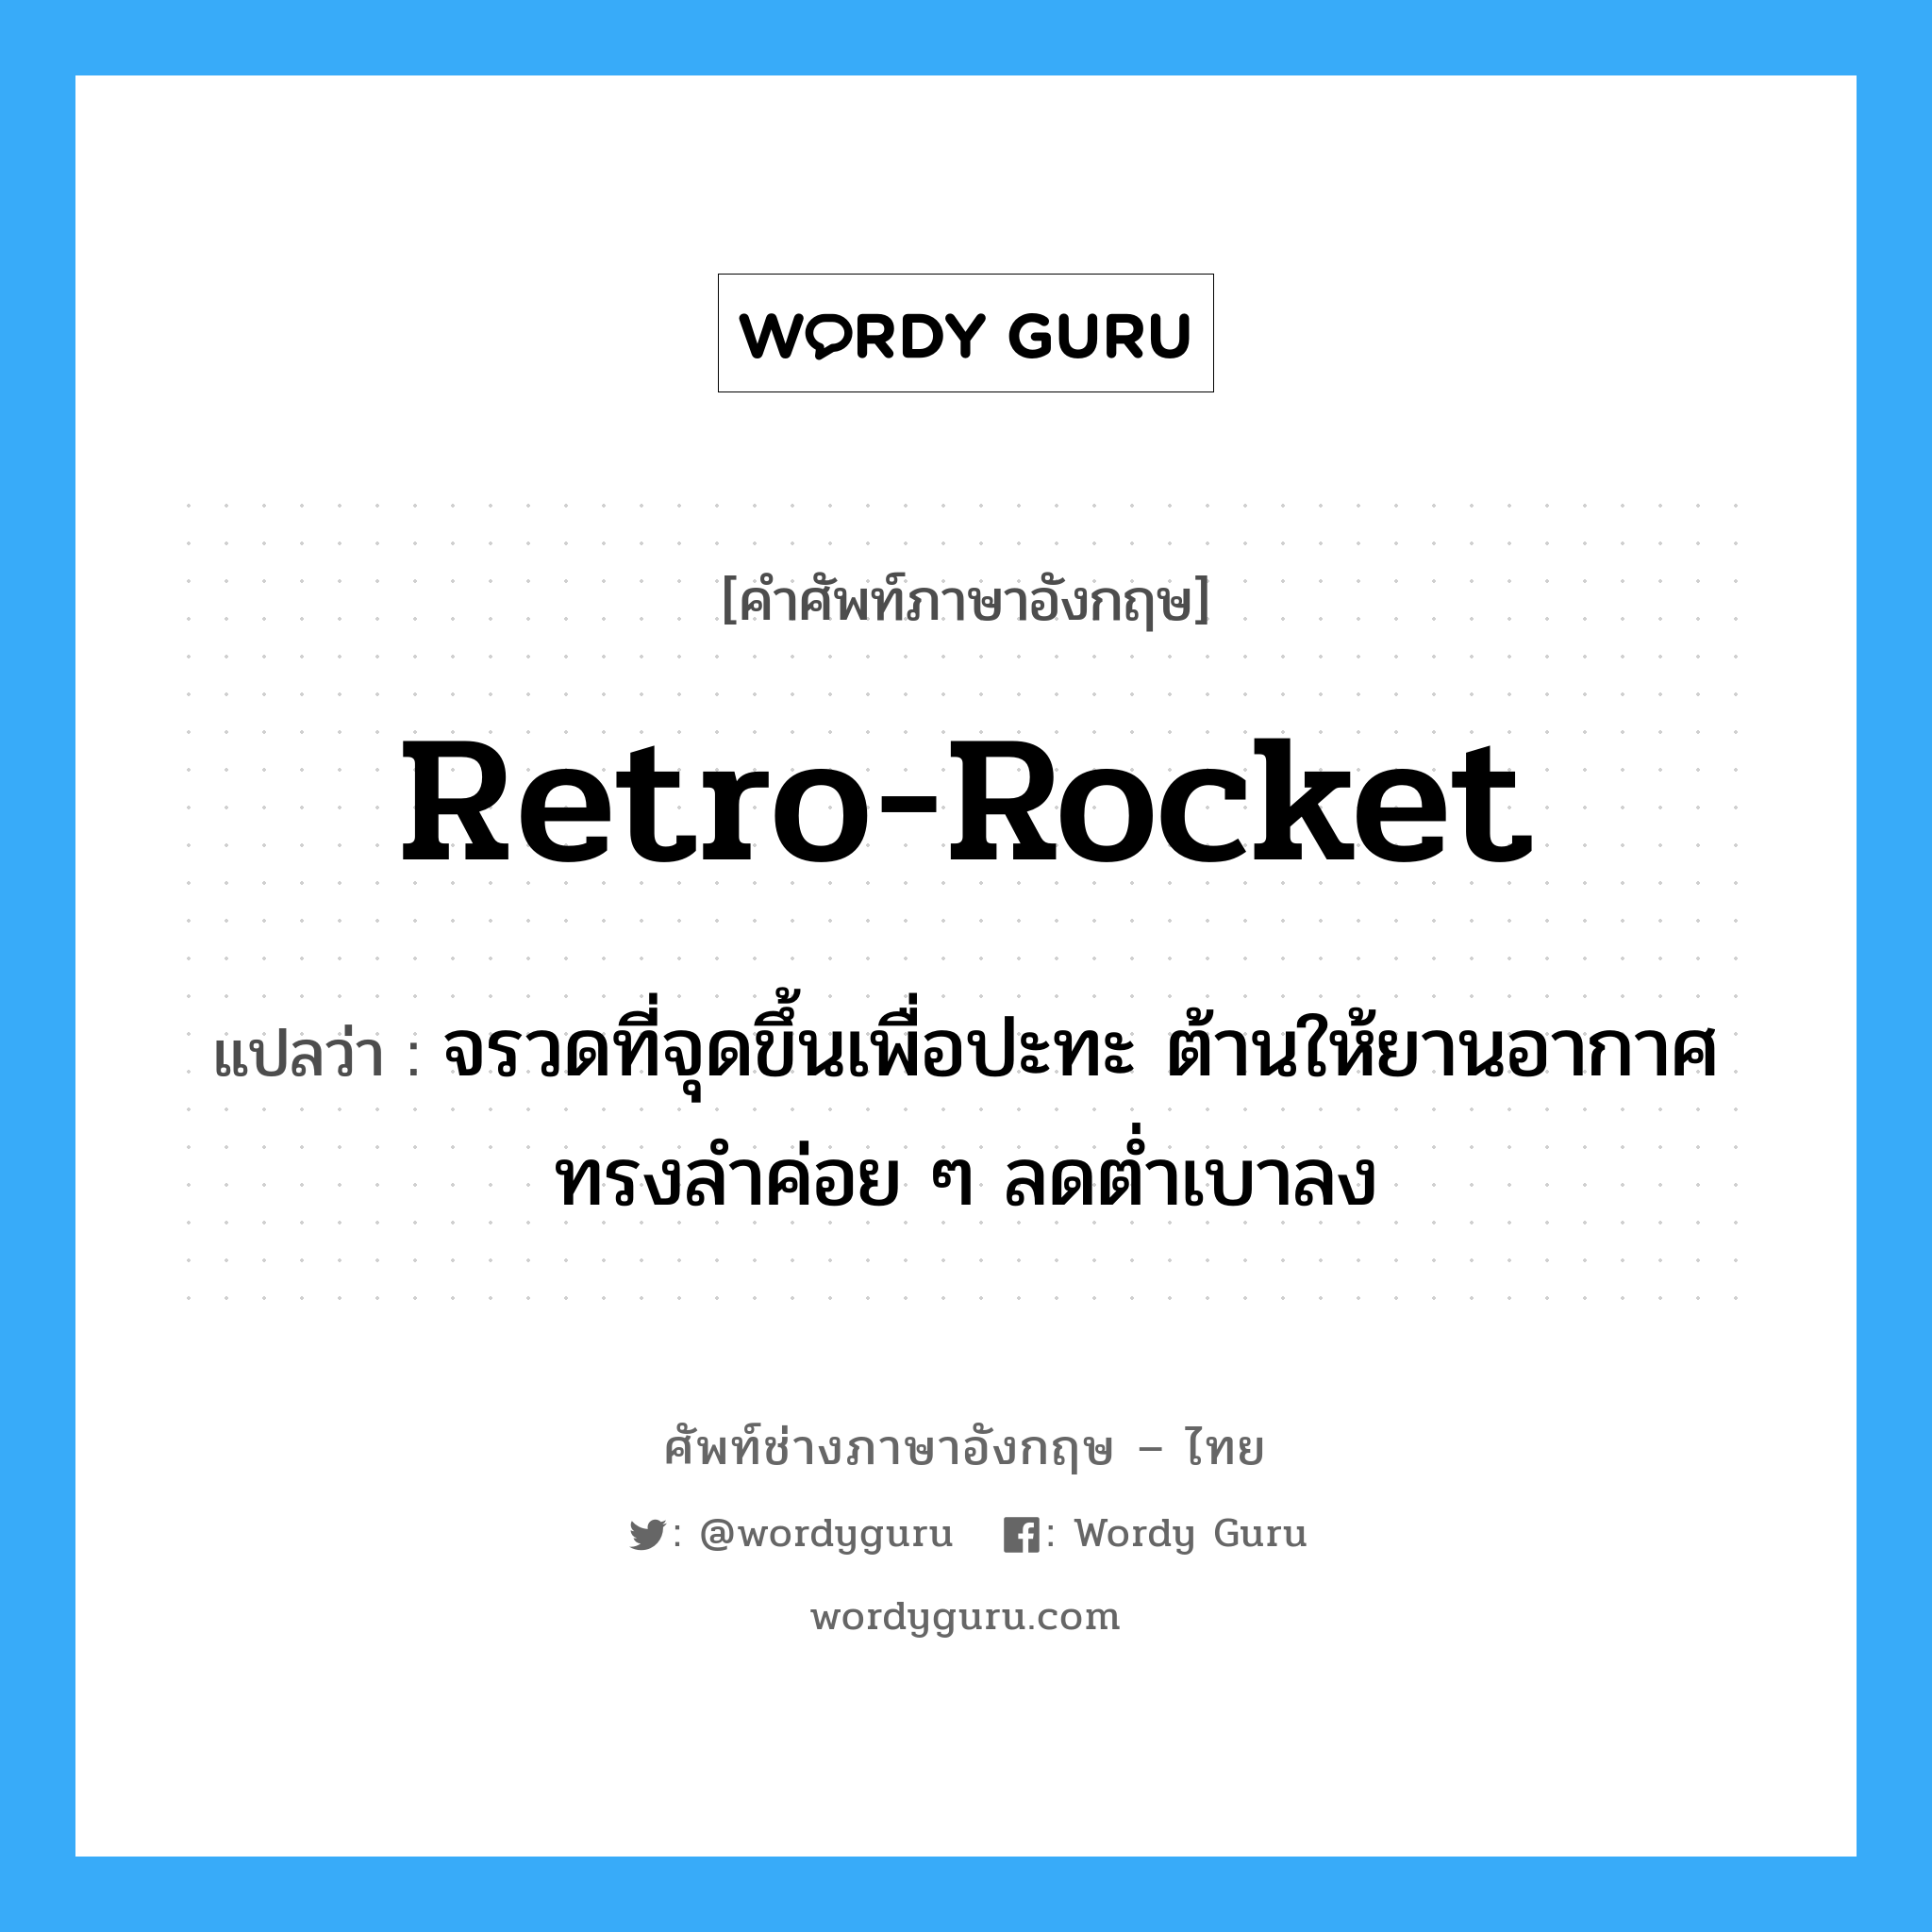 retro-rocket แปลว่า?, คำศัพท์ช่างภาษาอังกฤษ - ไทย retro-rocket คำศัพท์ภาษาอังกฤษ retro-rocket แปลว่า จรวดที่จุดขึ้นเพื่อปะทะ ต้านให้ยานอากาศทรงลำค่อย ๆ ลดต่ำเบาลง